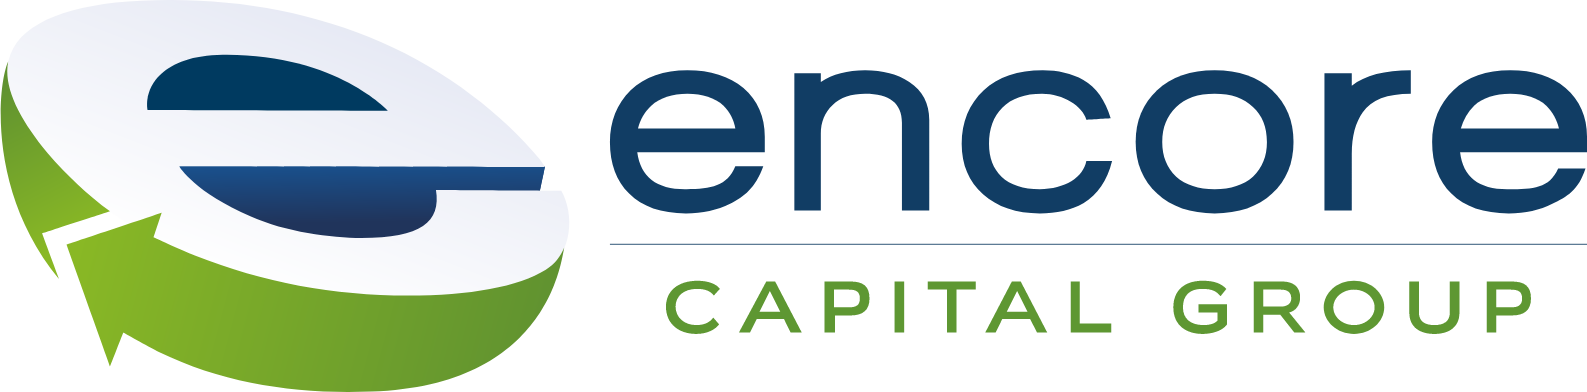 Encore Capital Group logo large (transparent PNG)